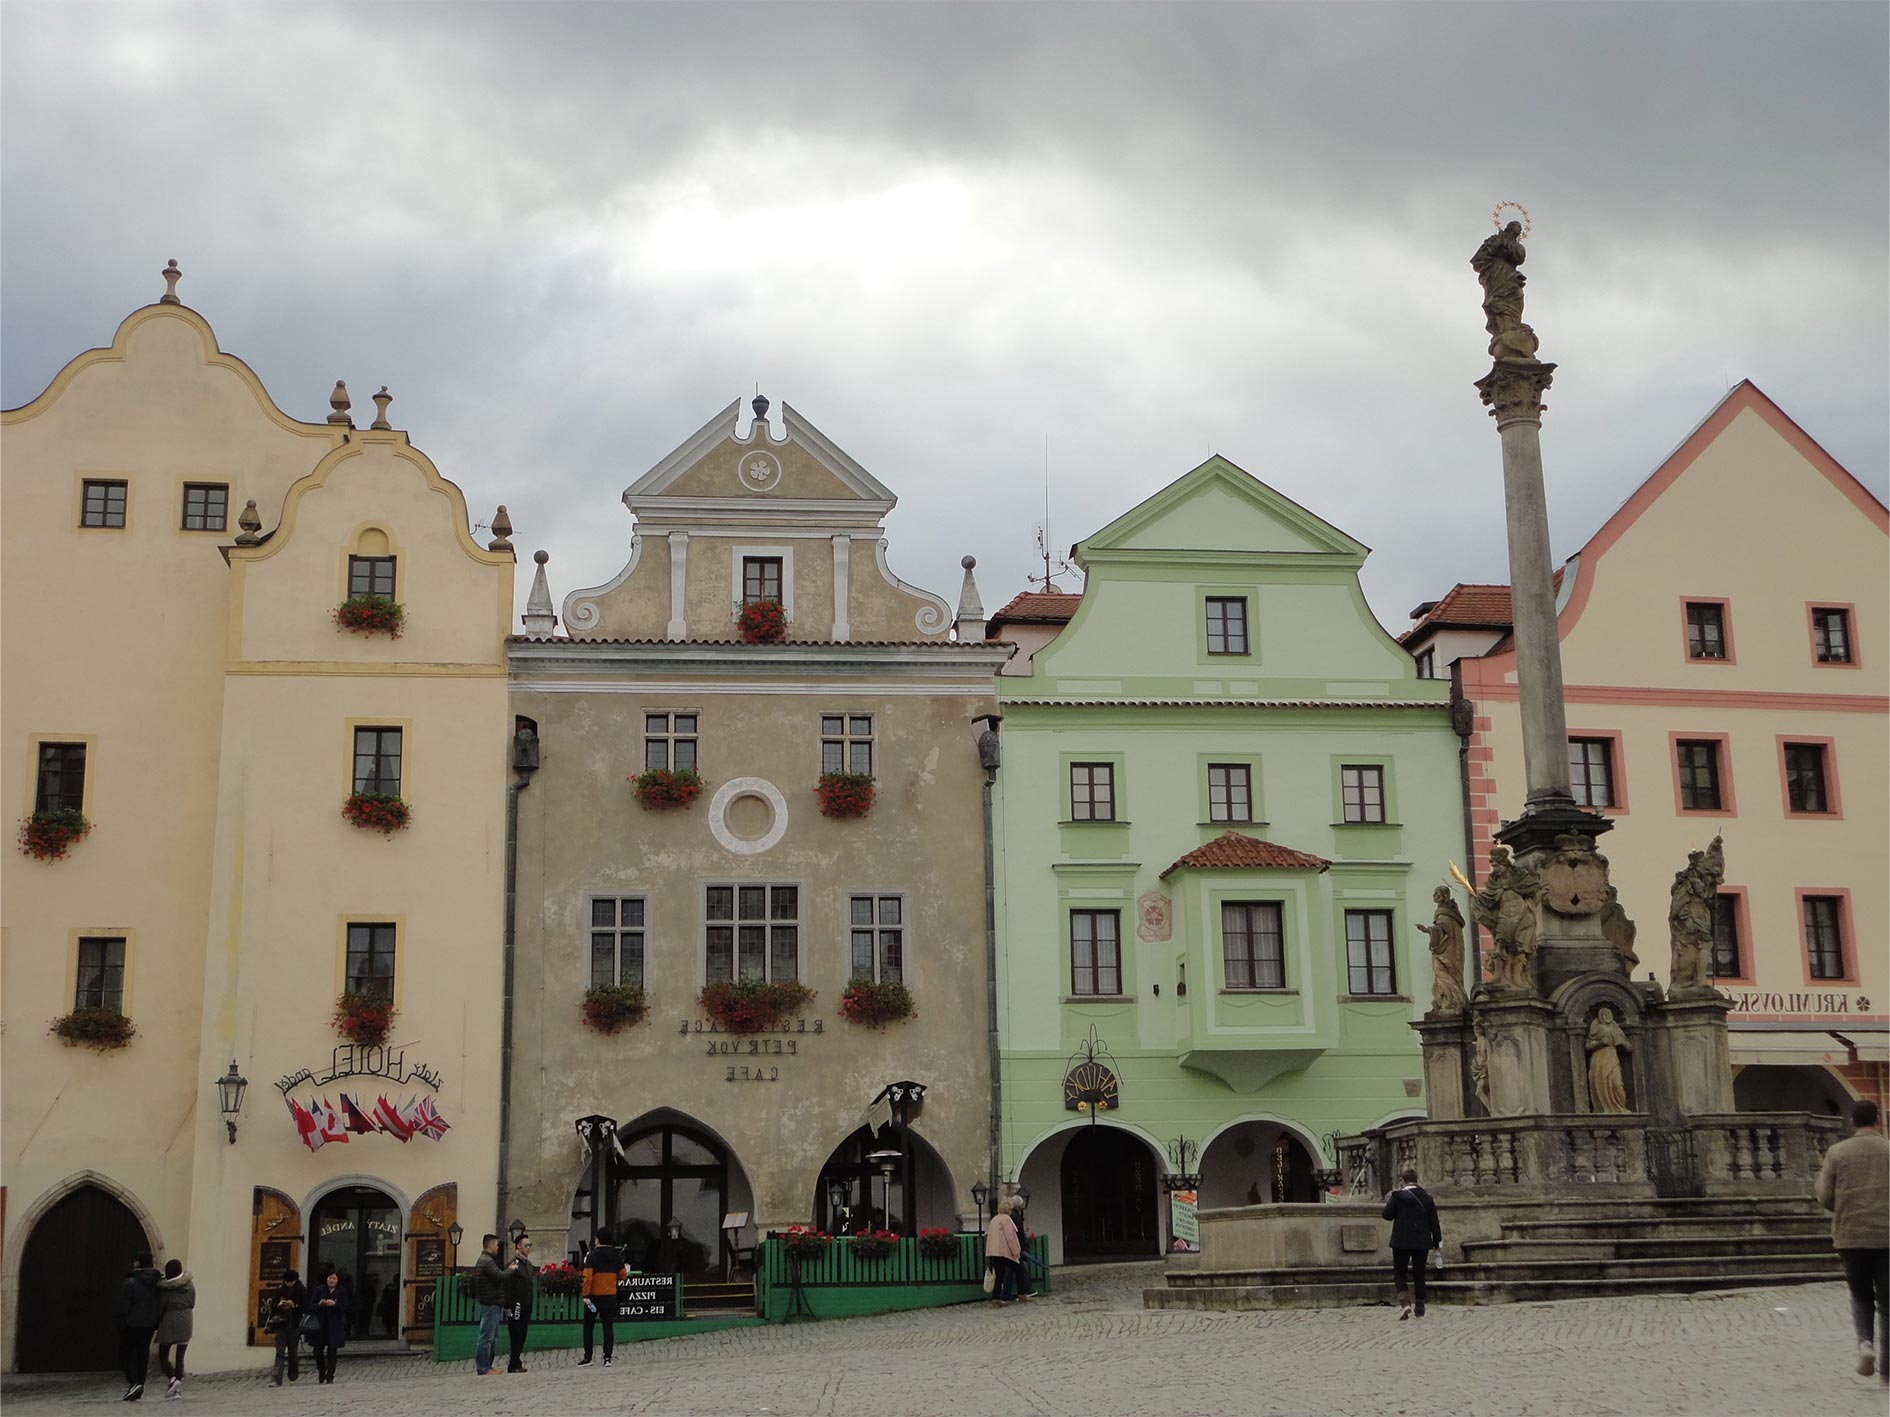 Colorful toylike houses in Český Krumlov